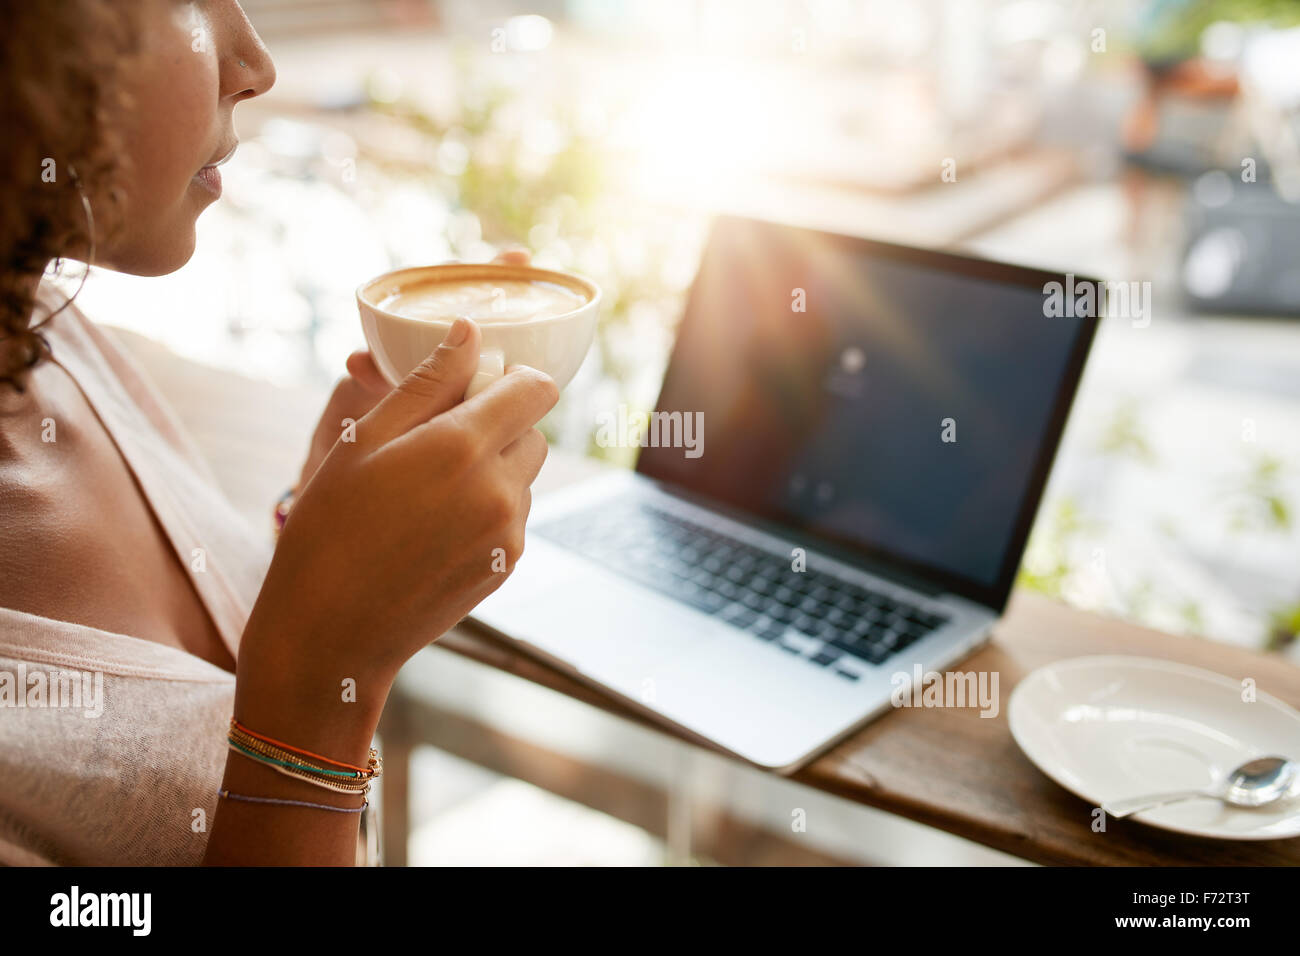 Bild der Frau Kaffee trinken mit einem Laptop am Tisch in einem Restaurant beschnitten. Junges Mädchen hält eine Tasse Kaffee im Café. Stockfoto